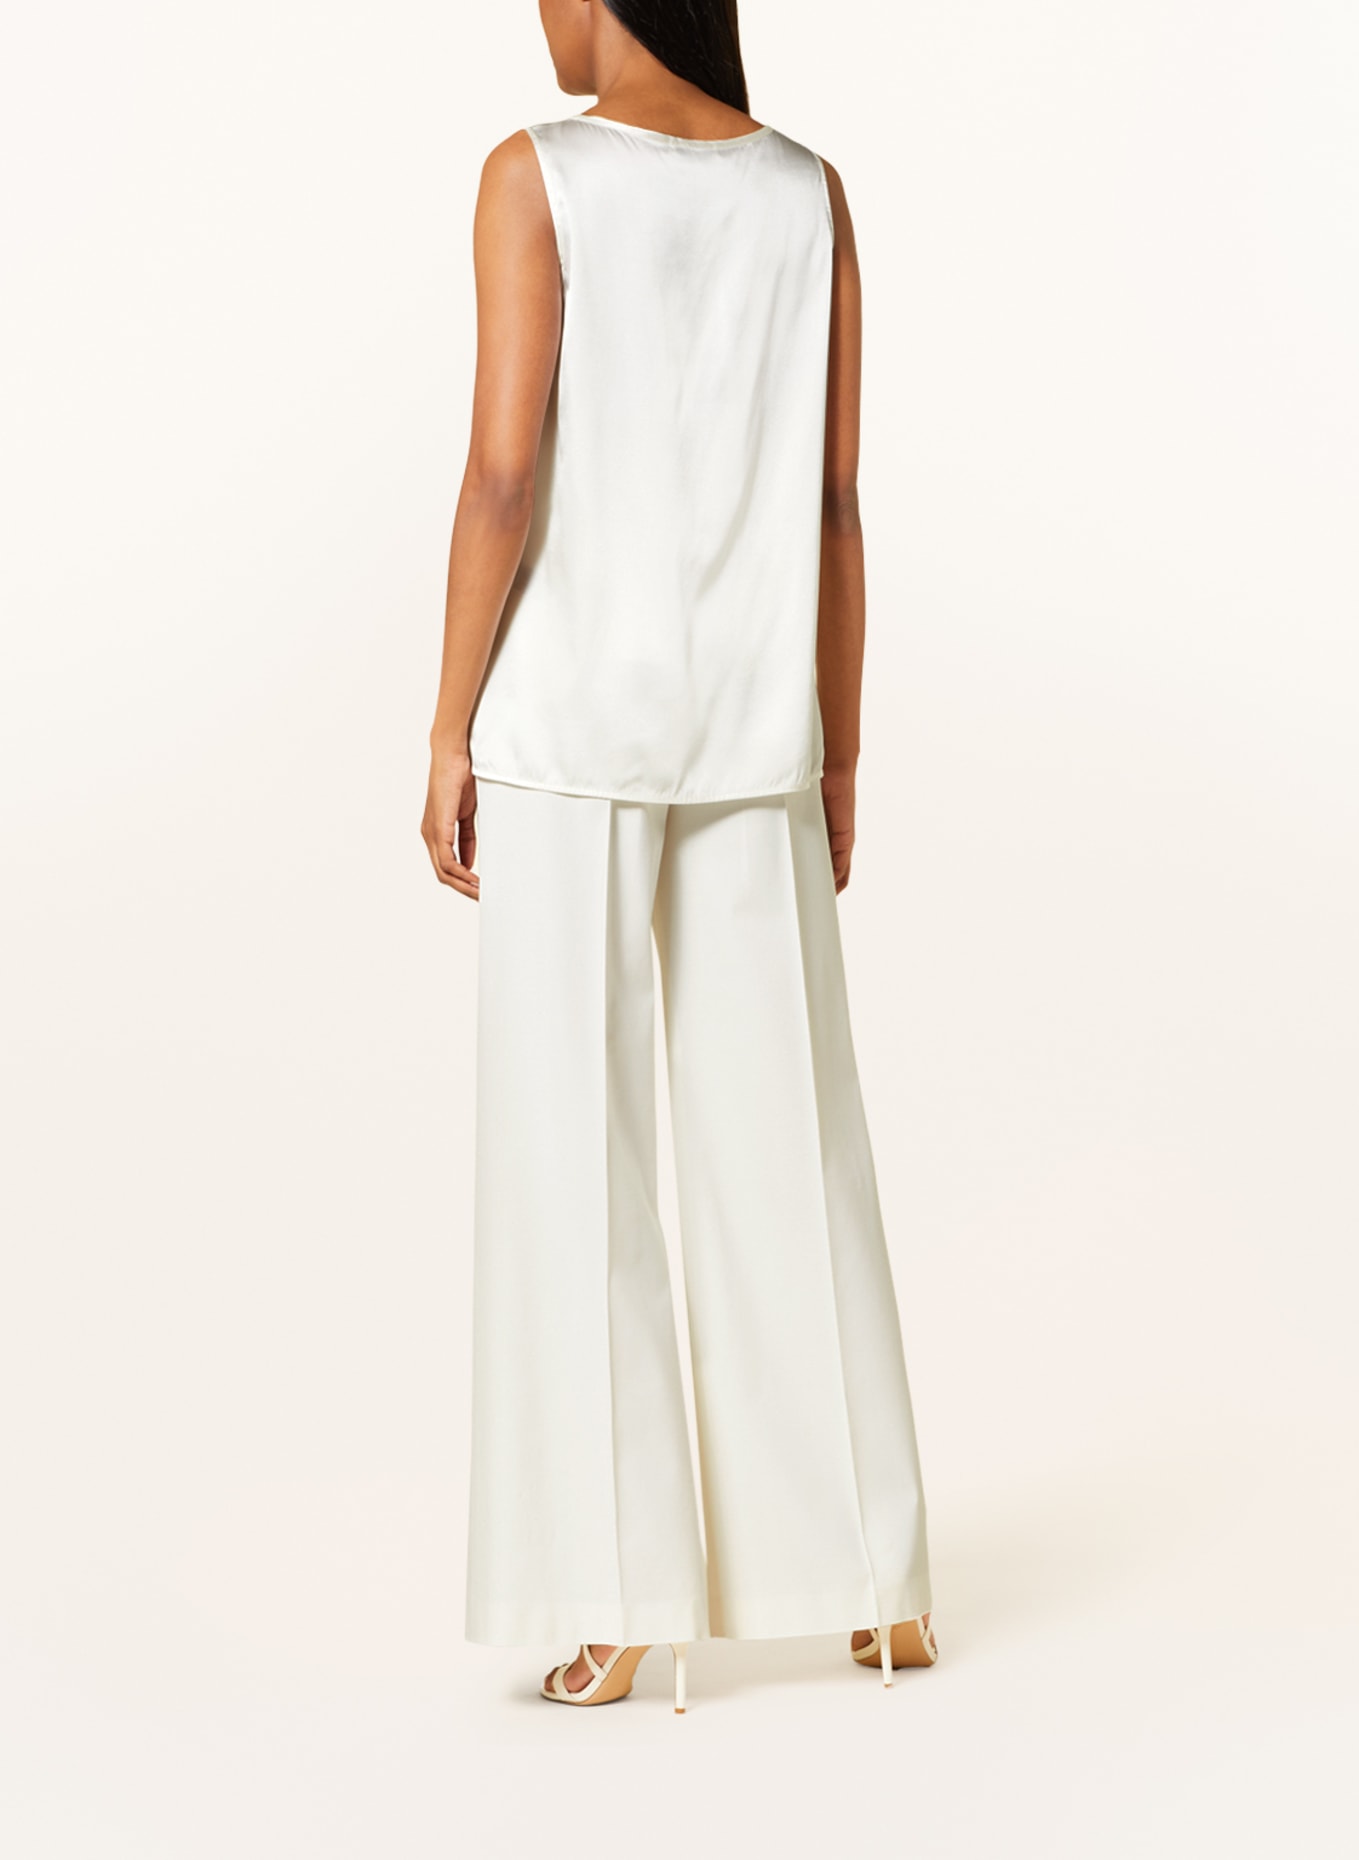 ANTONELLI firenze Silk top, Color: WHITE (Image 3)